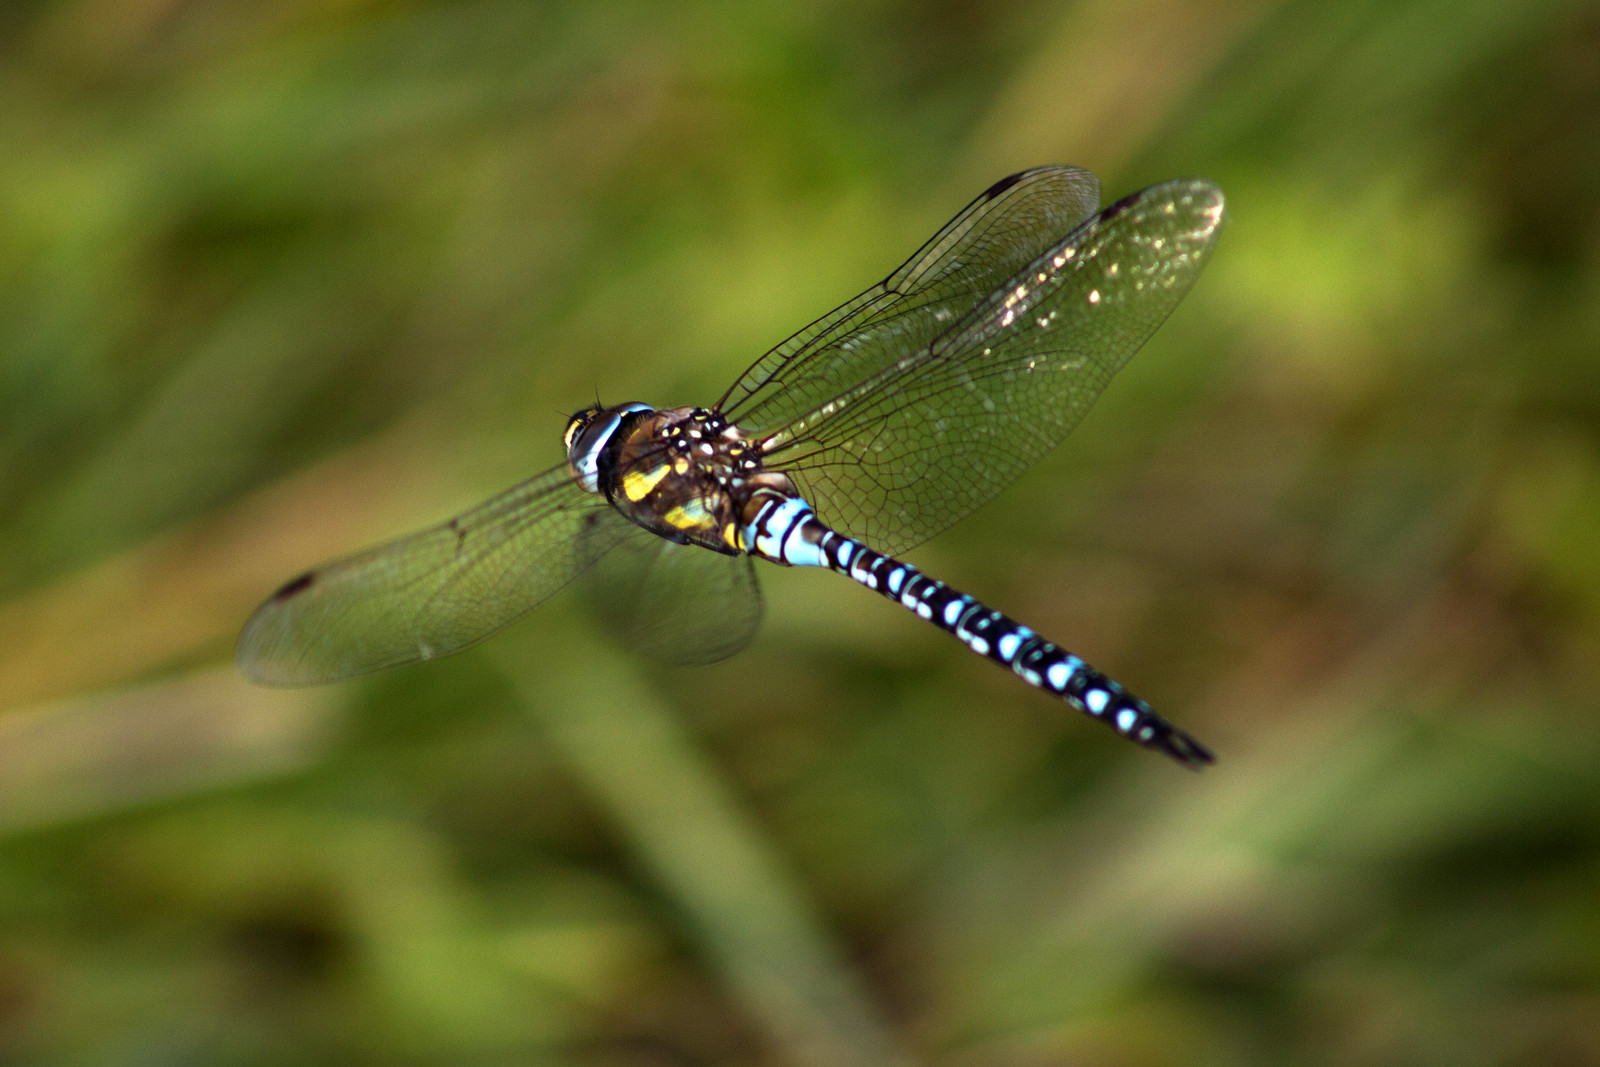 dragonfly in flight